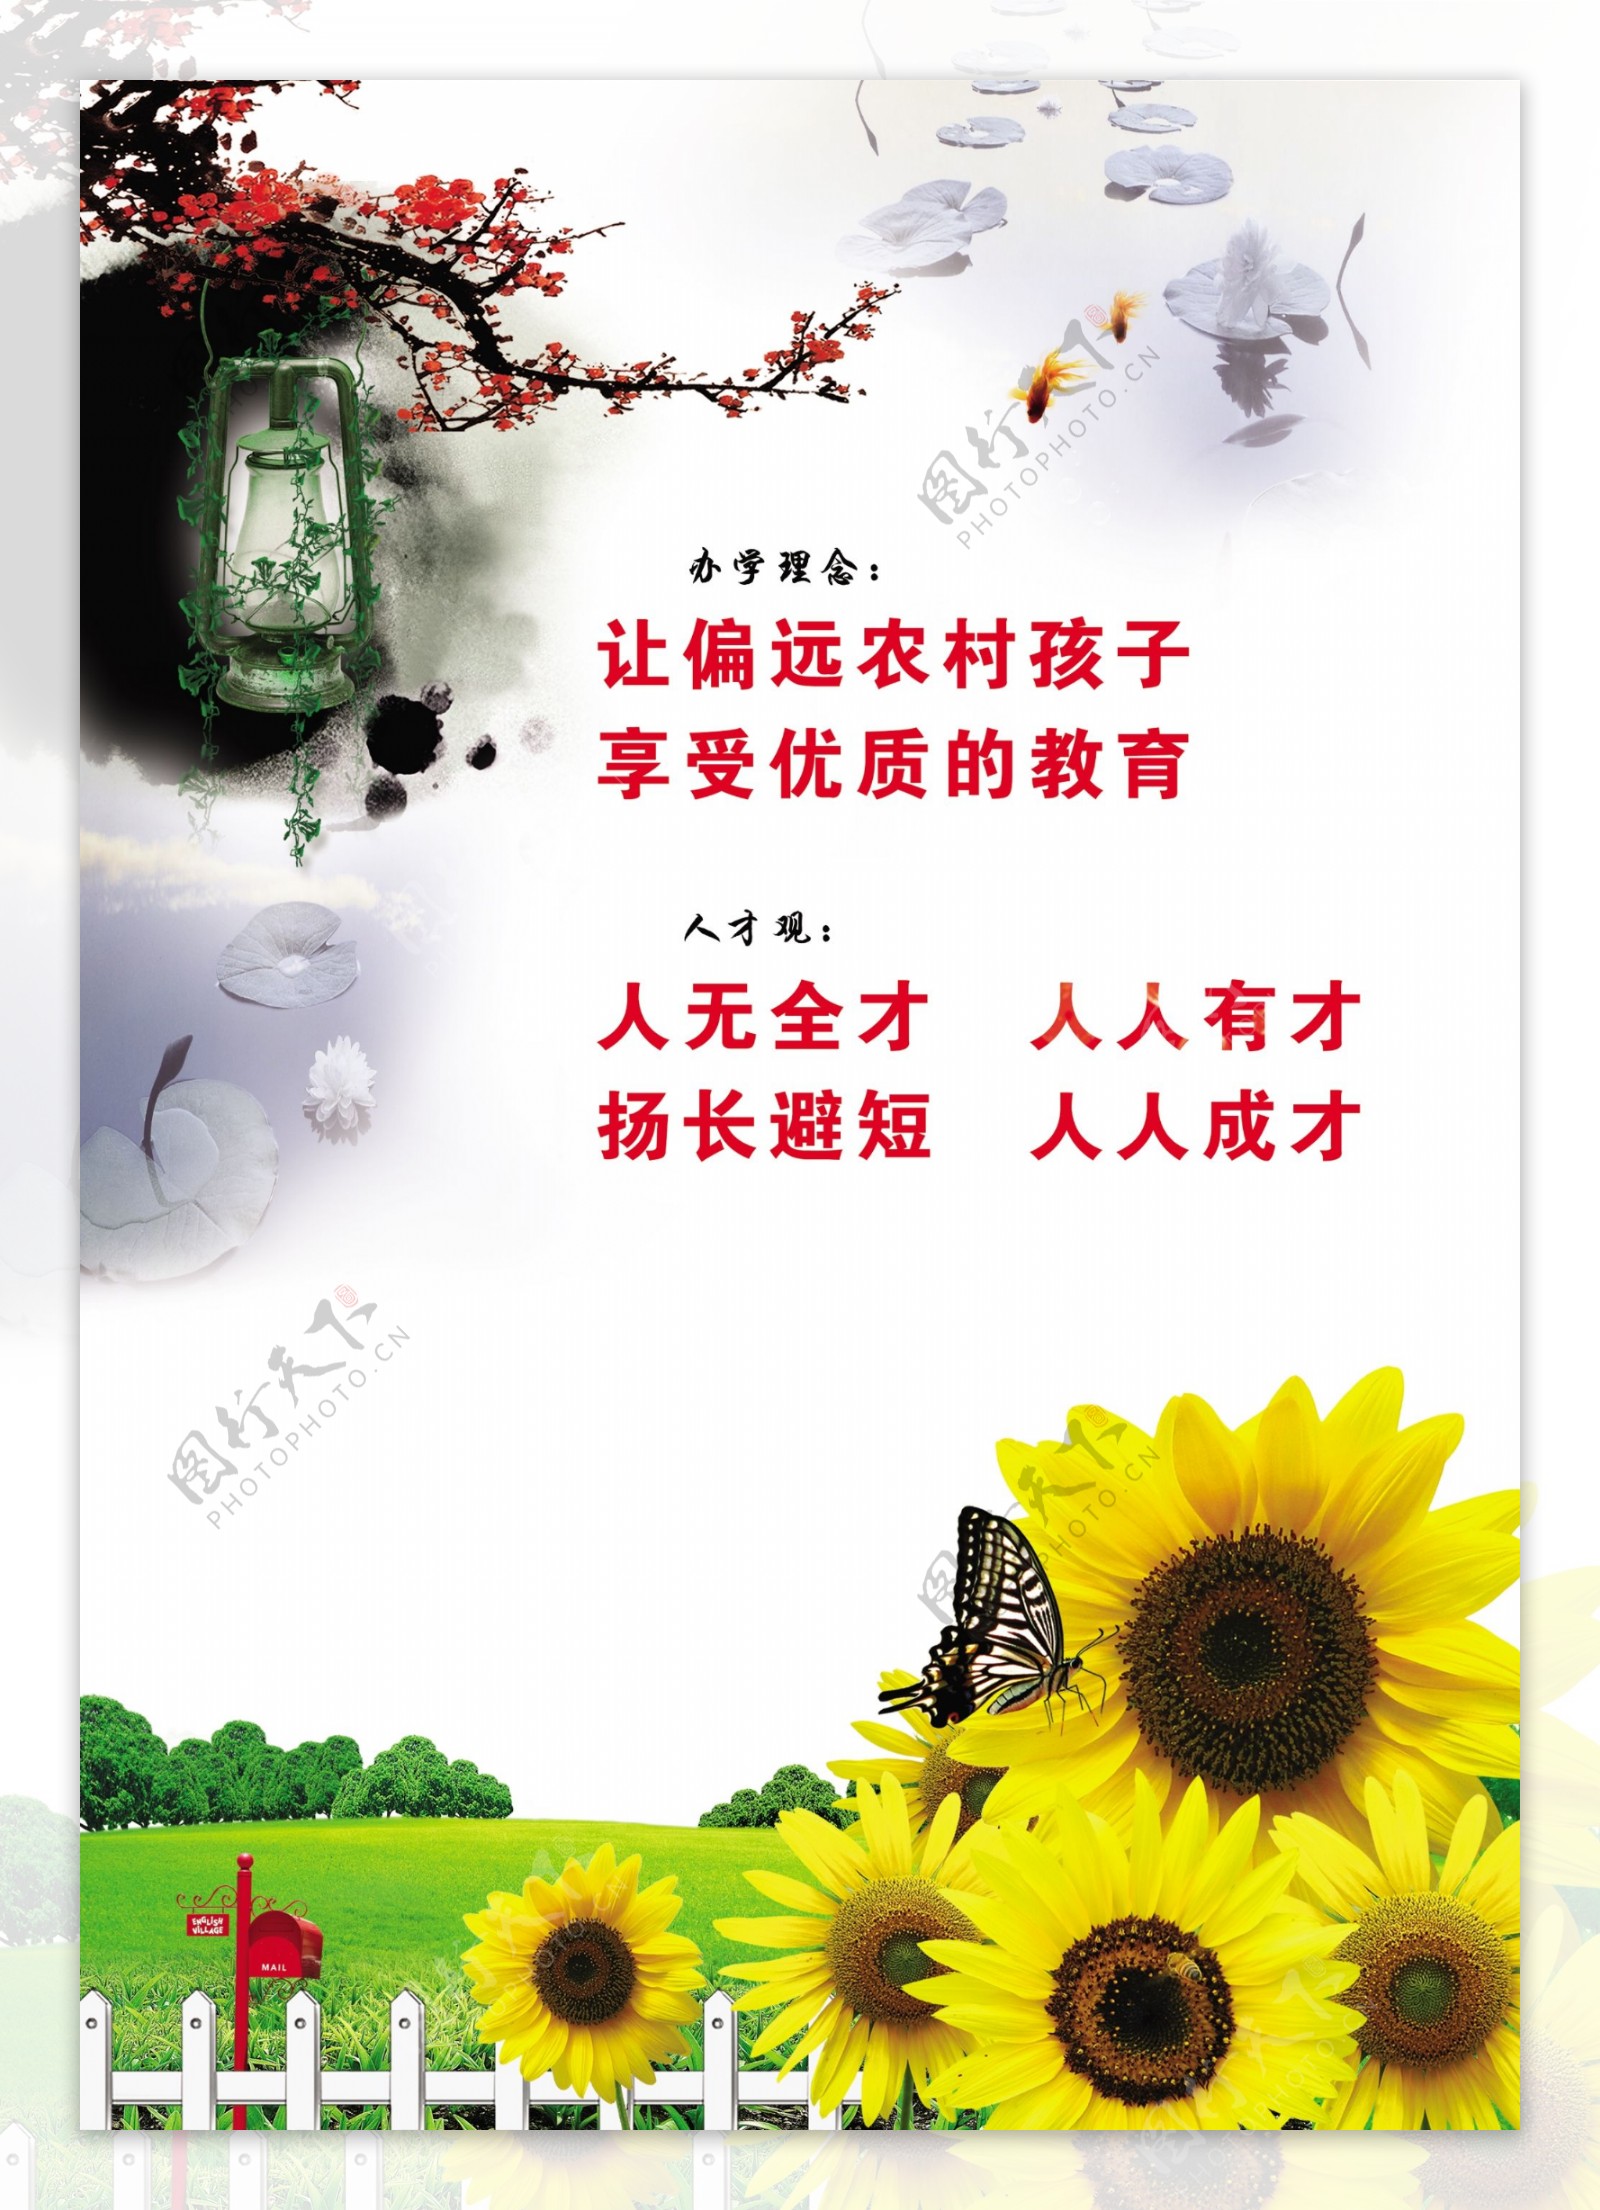 农村办学理念文化宣传广告图片